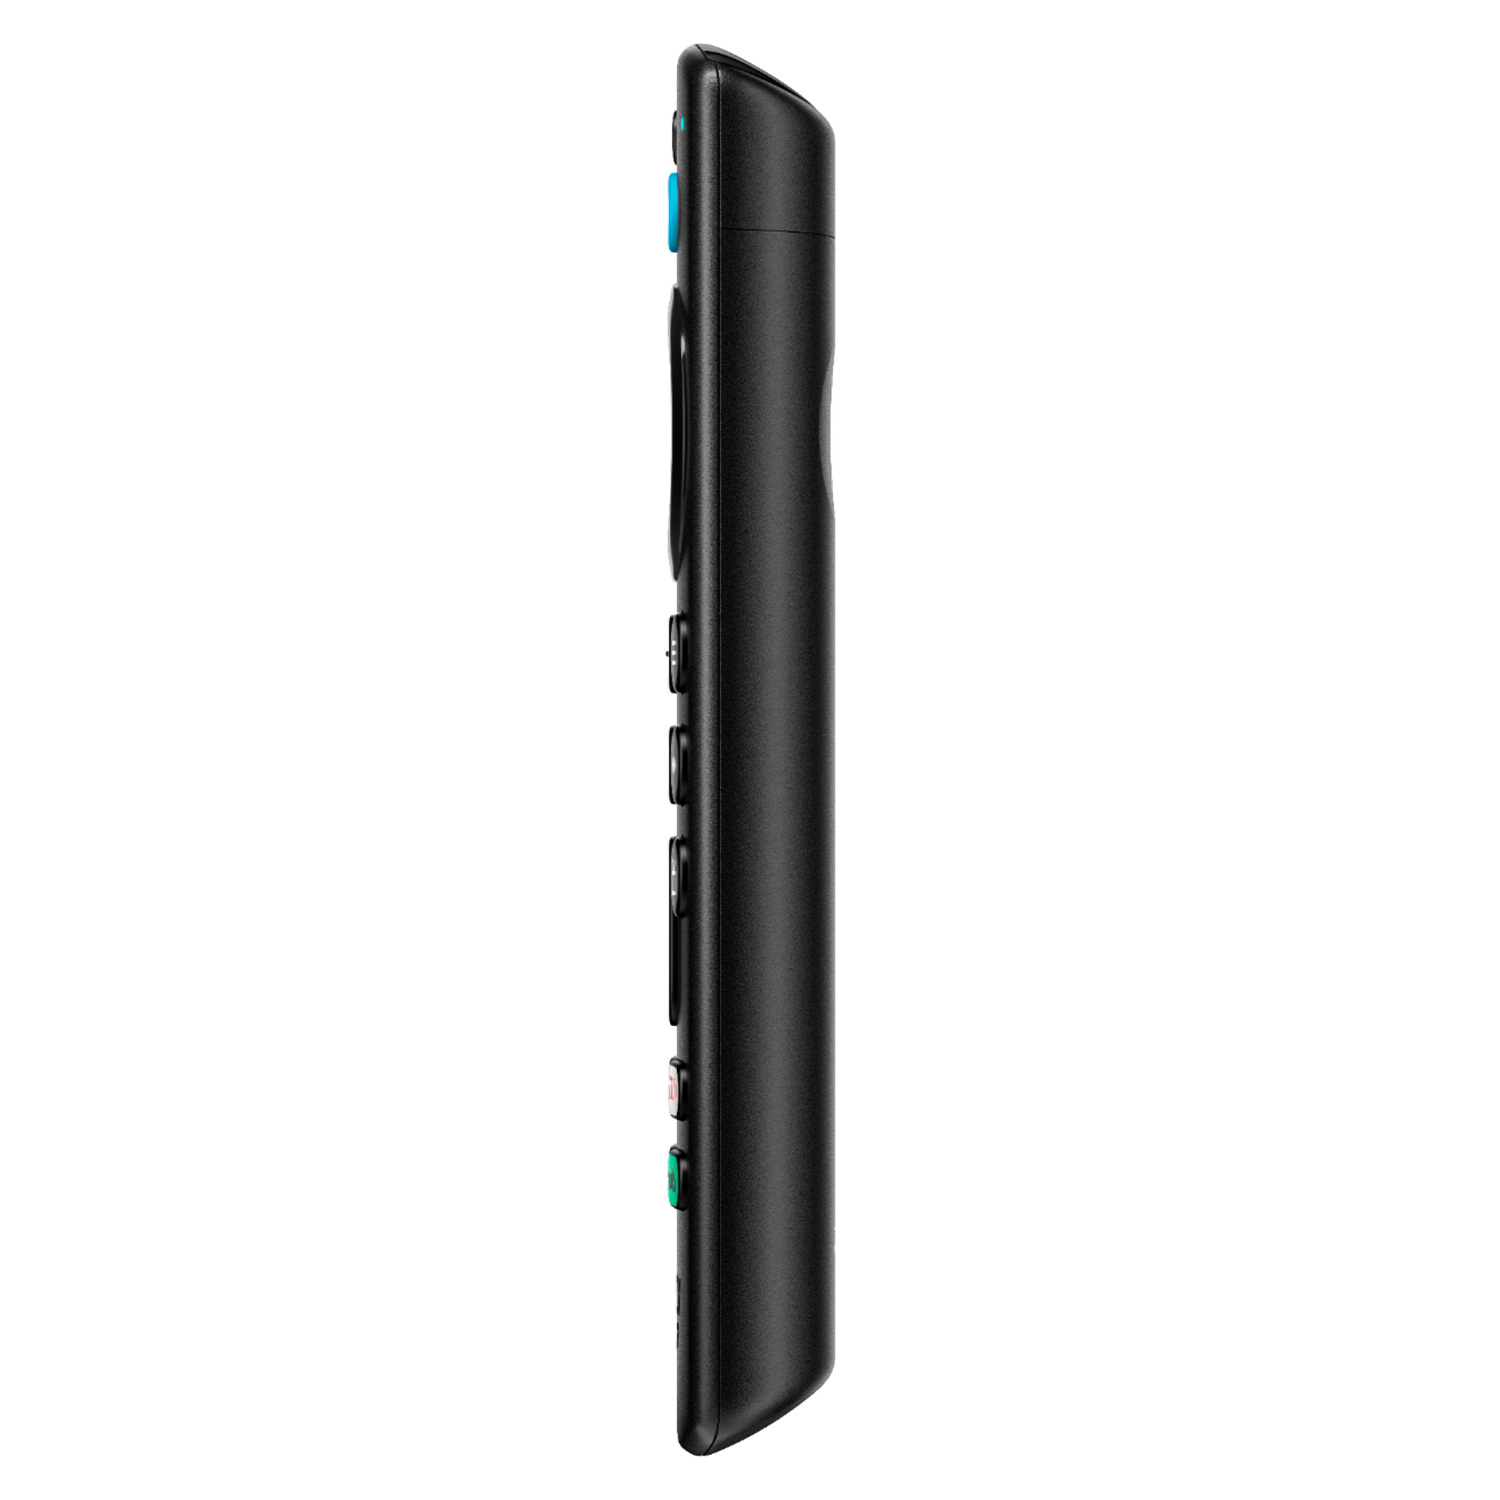 Amazon Fire TV Stick All New (3rd Gen) com Alexa - (592411) (2021)